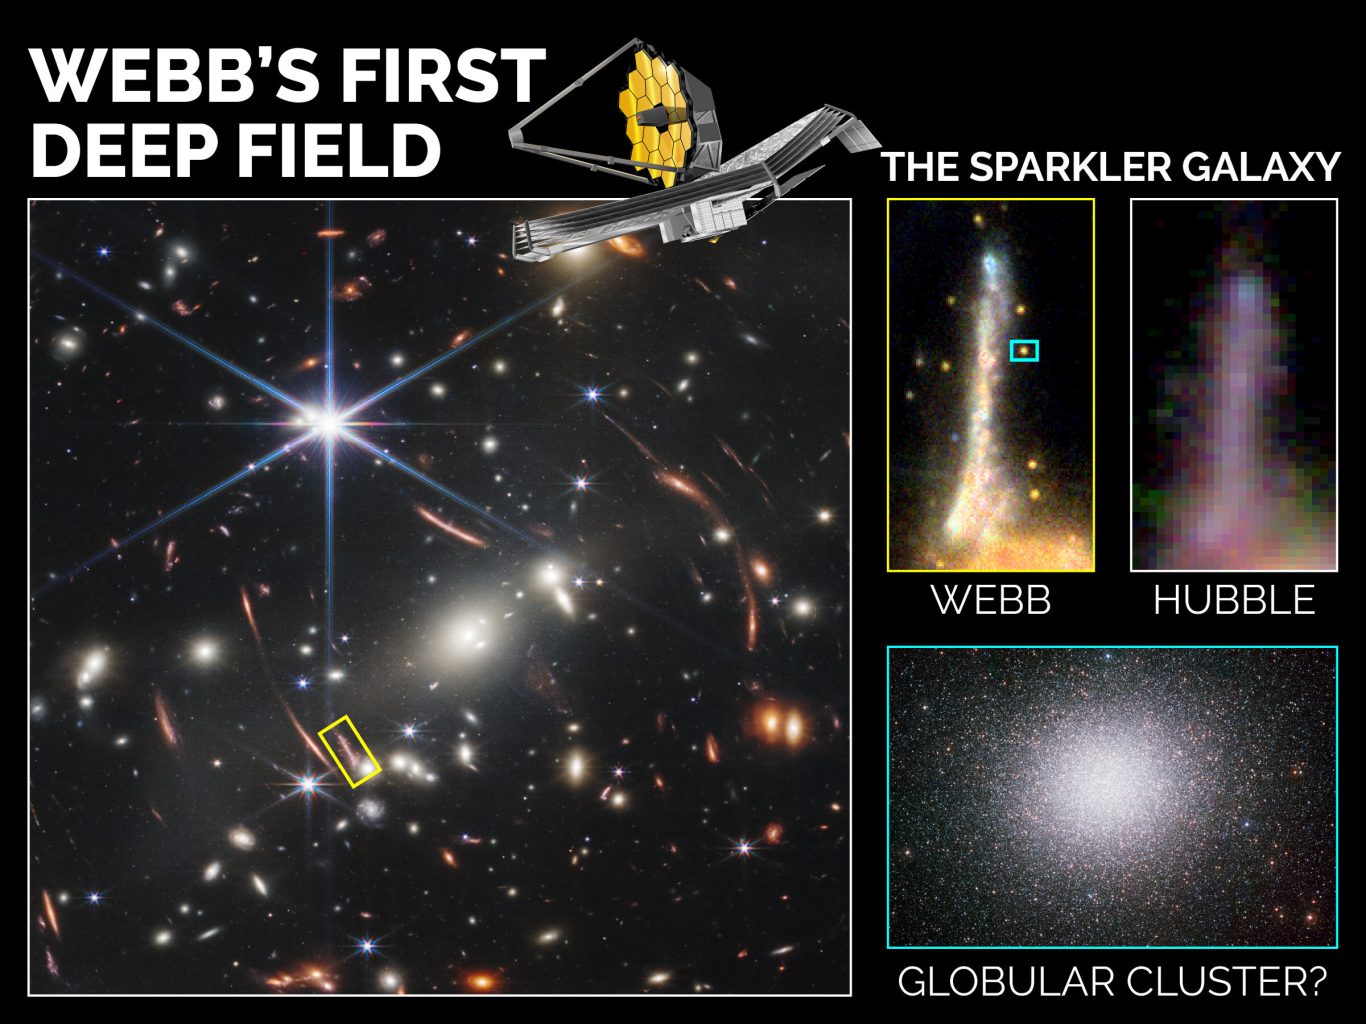 Pet svjetlucavih objekata oko galaksije Sparkler na Webbovoj slici dubokog polja zapravo su globularnih skupovi. Izvor: Kanadska svemirska agencija, NASA-e, ESA-e, CSA, STScI; Mowla, Iyer, et al. 2022